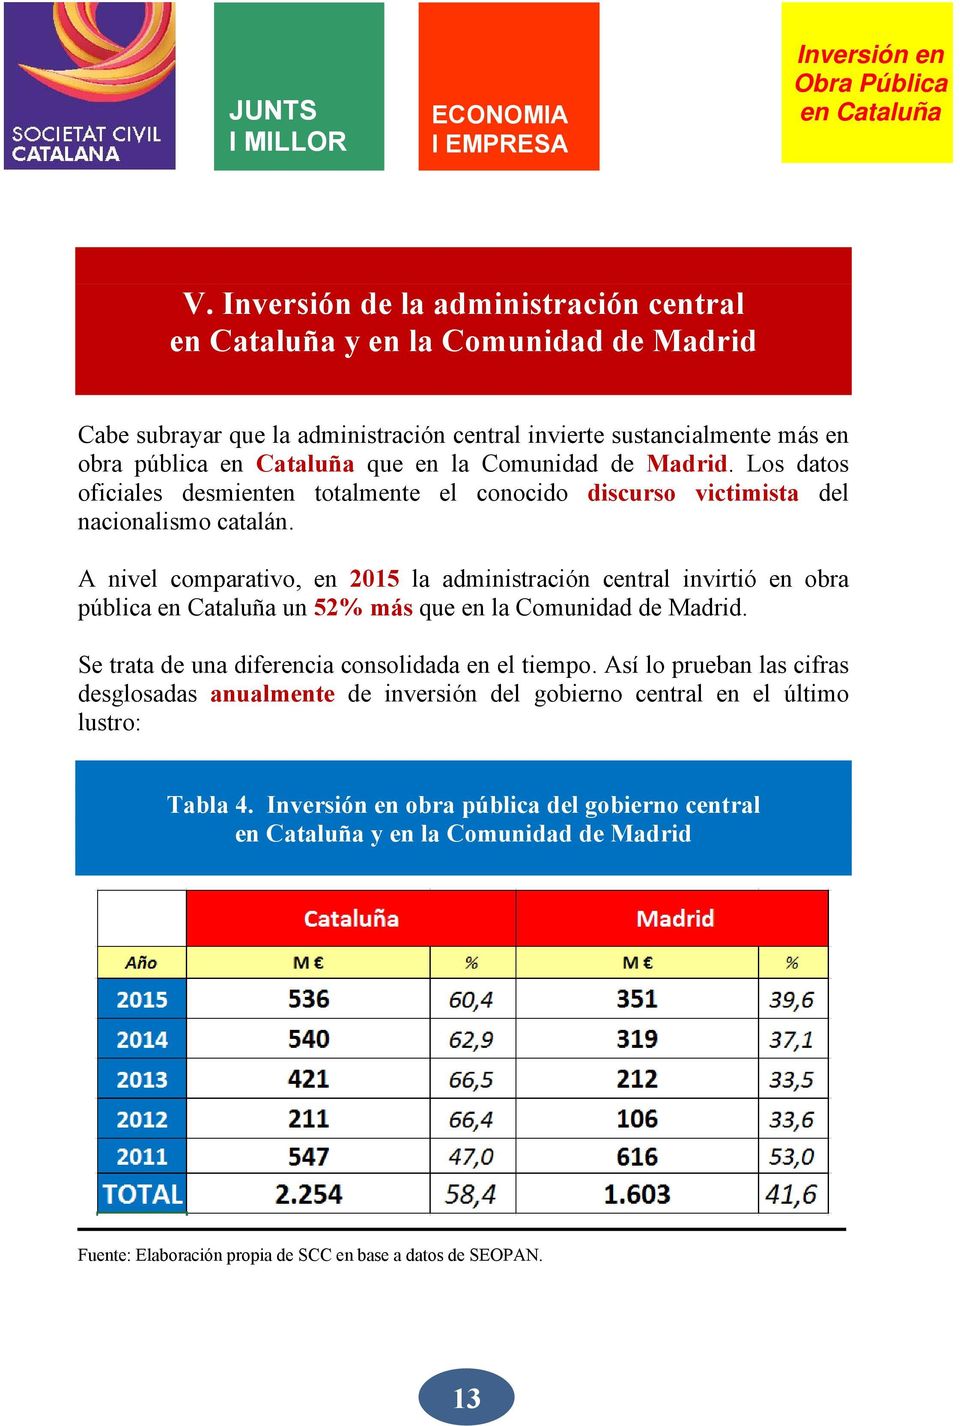 A nivel comparativo, en 2015 la administración central invirtió en obra pública un 52% más que en la Comunidad de Madrid. Se trata de una diferencia consolidada en el tiempo.